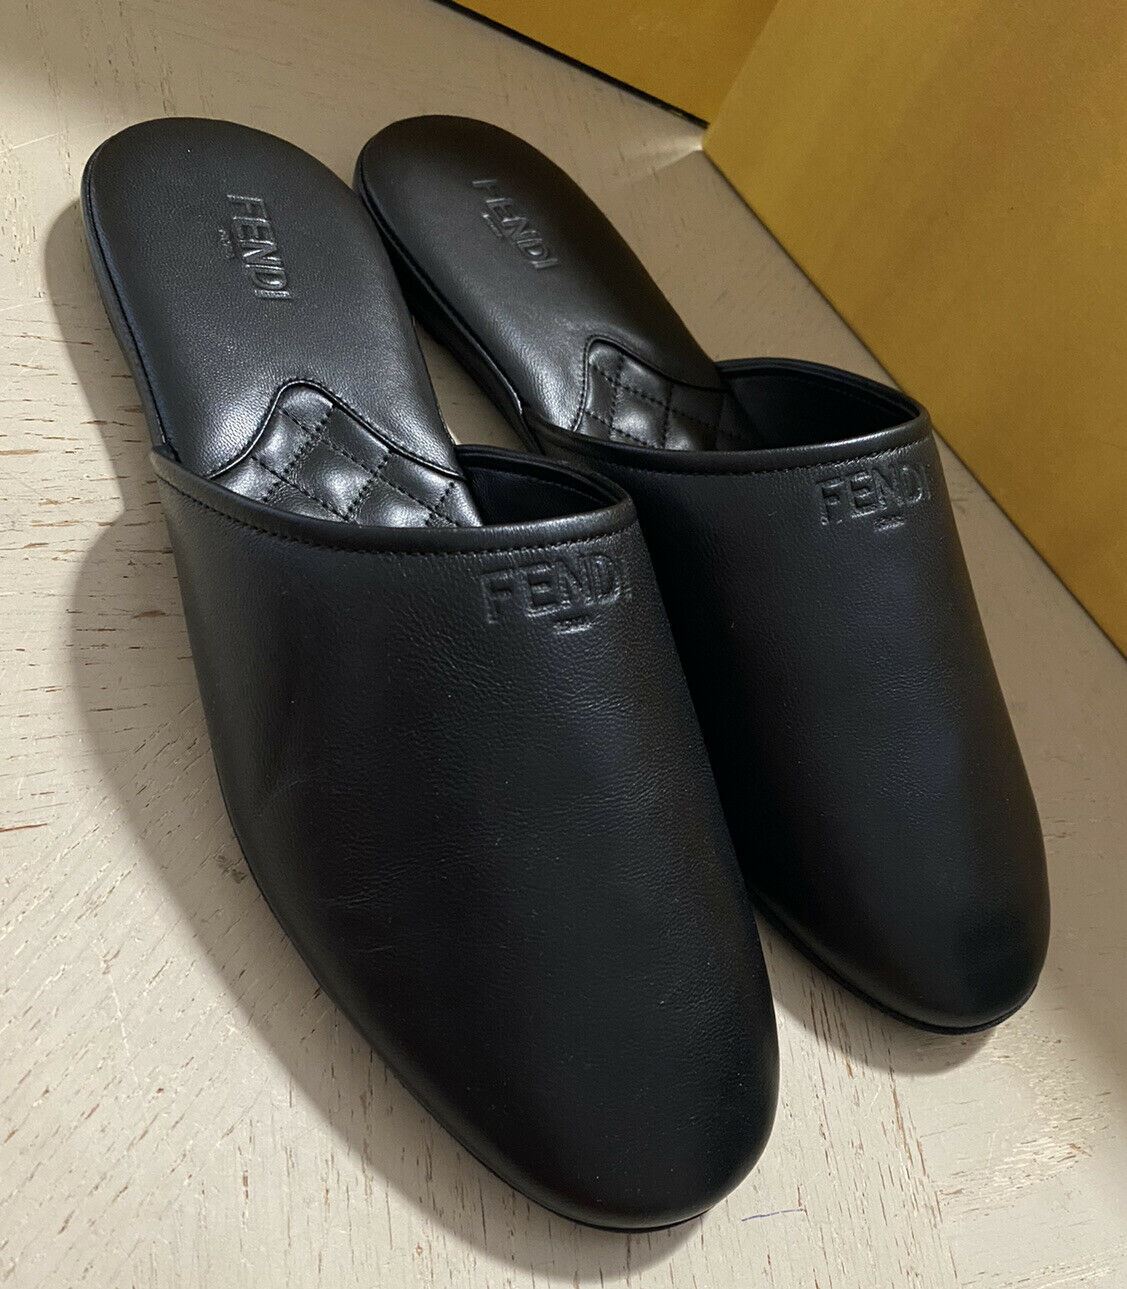 NIB Fendi Herren Leder Sandale Schuhe Schwarz 8 US/7 UK Italien